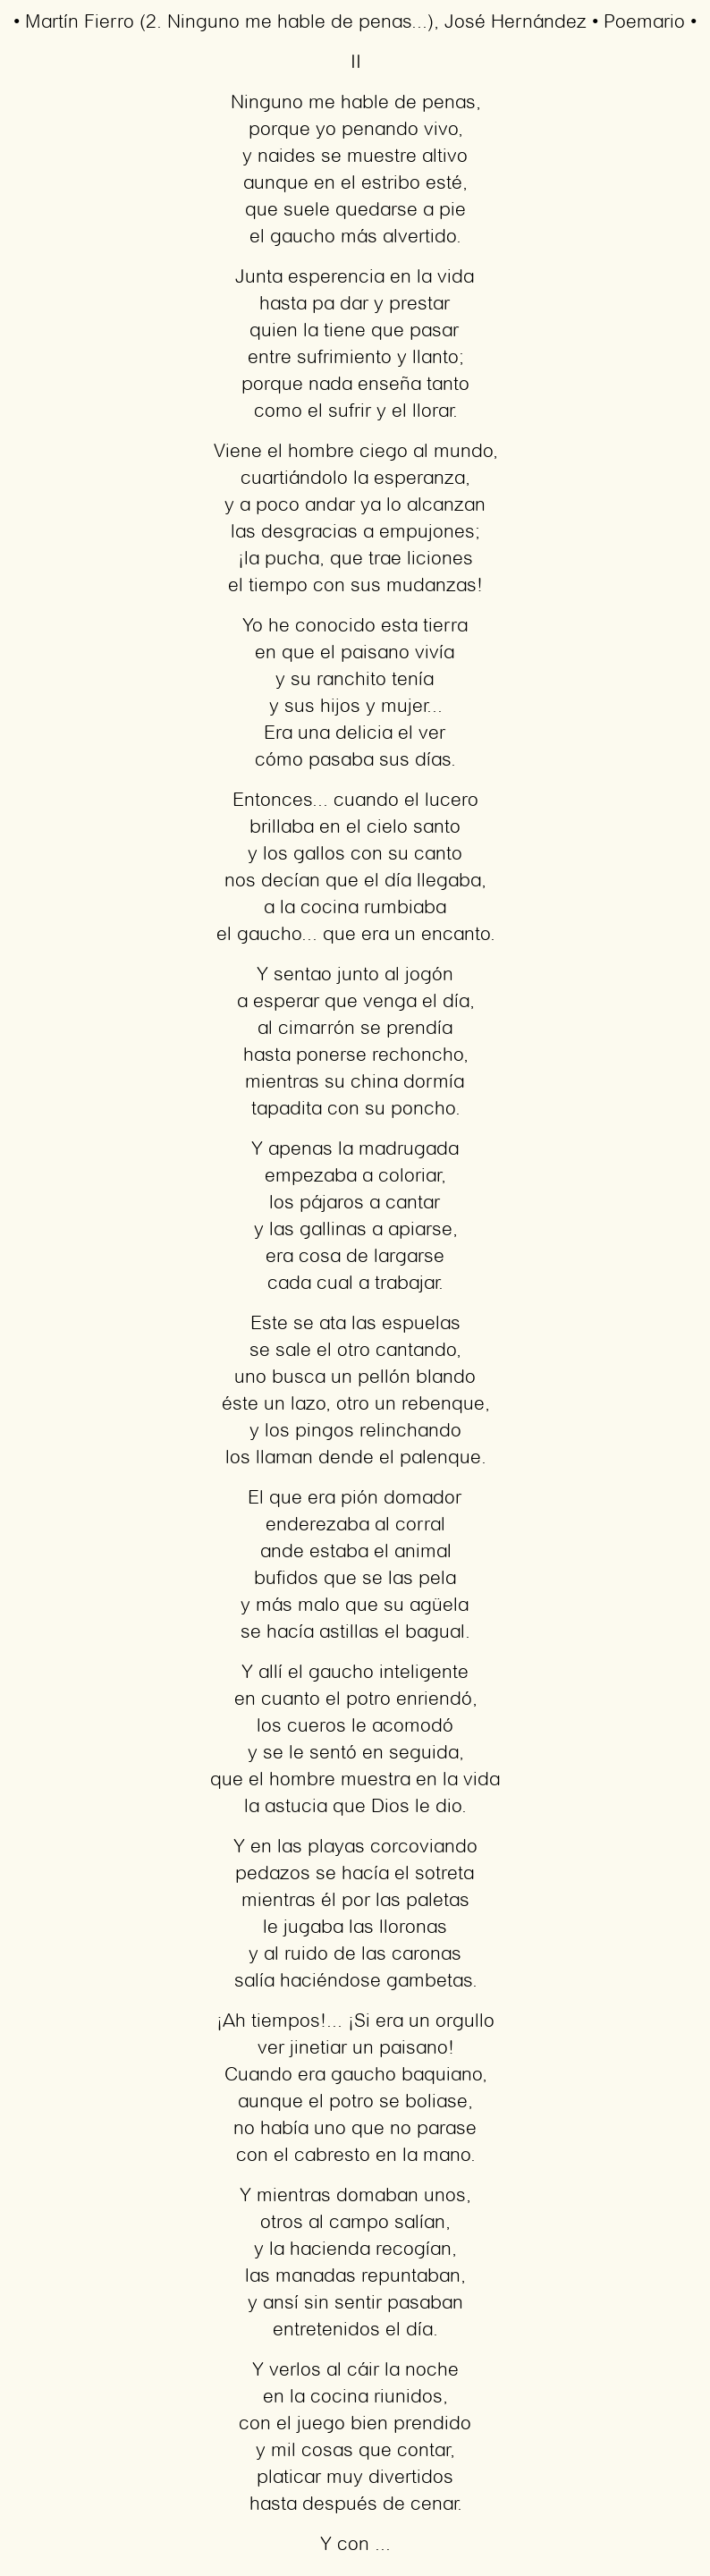 Imagen con el poema Martín Fierro (2. Ninguno me hable de penas…), por José Hernández